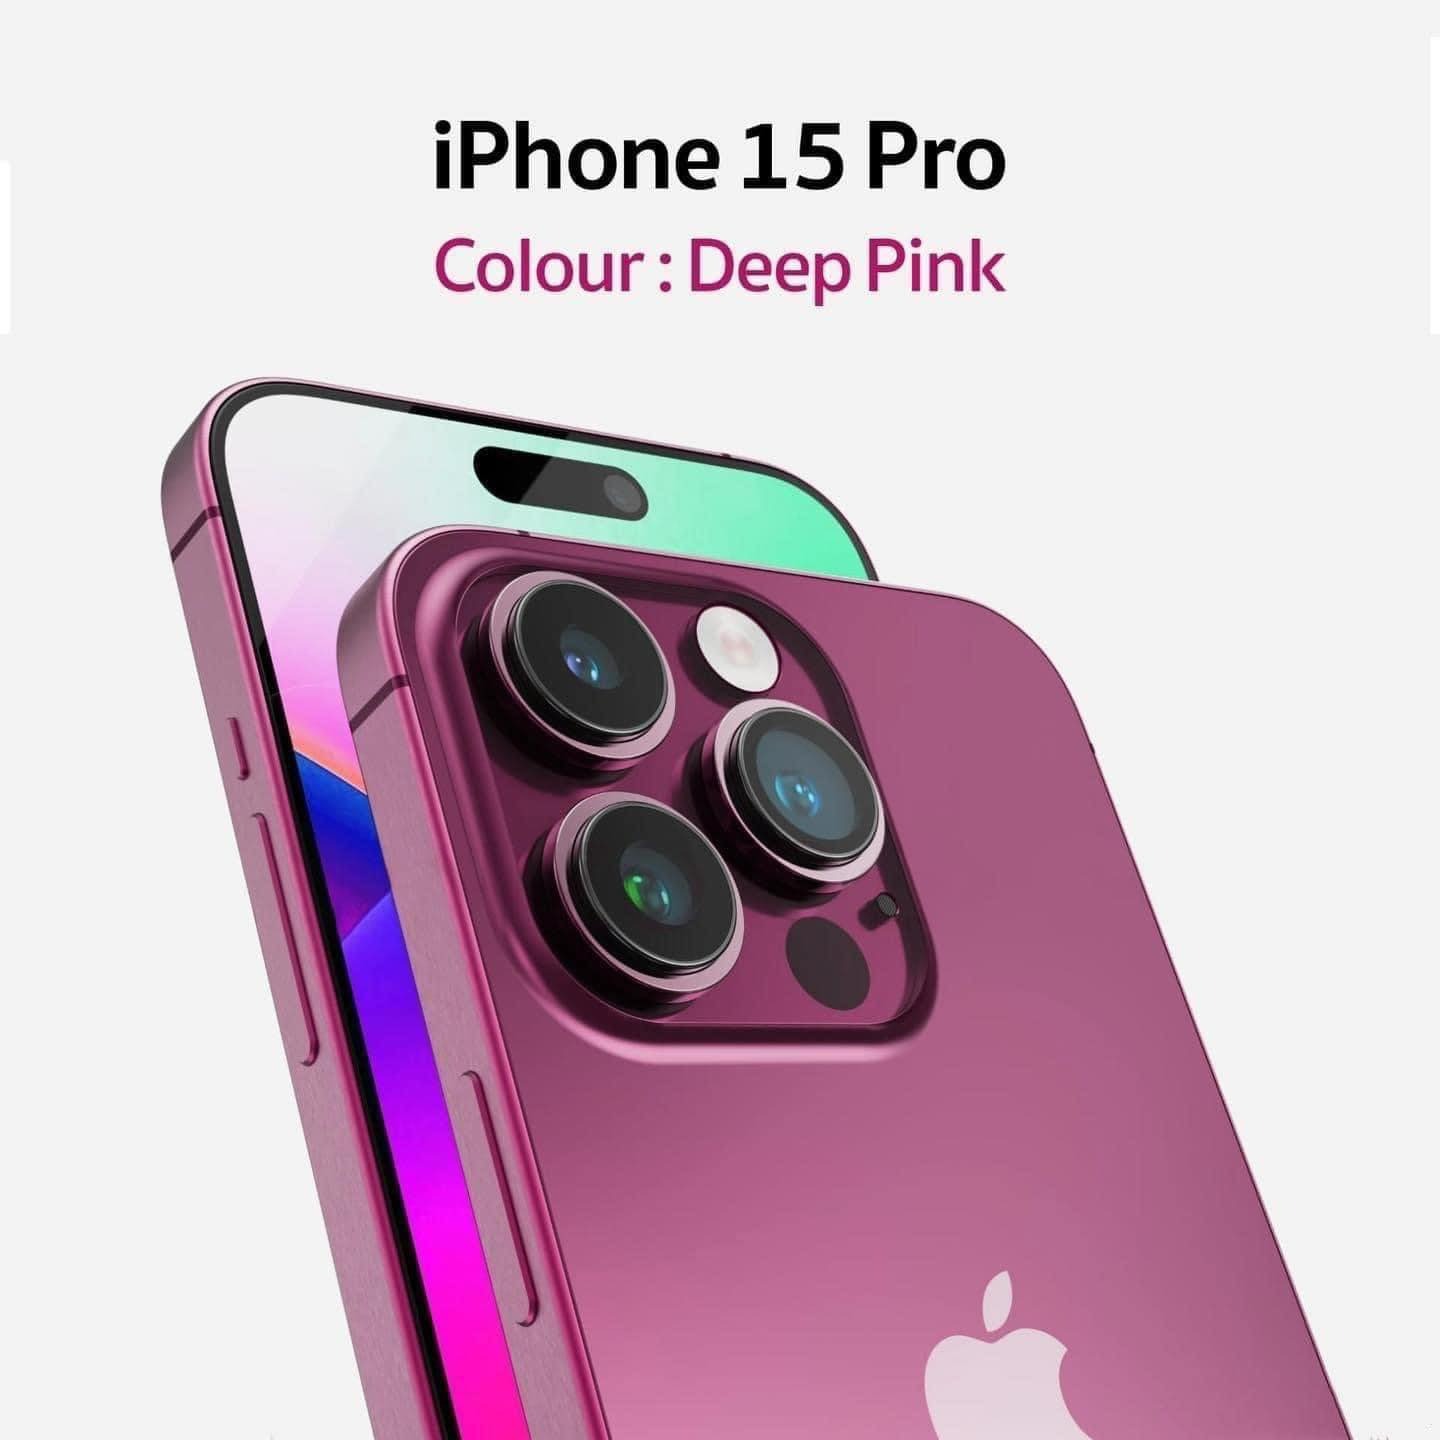 Xuất hiện hình ảnh iPhone 15 Pro màu hồng, đẹp lấn át cả màu đỏ rượu vang